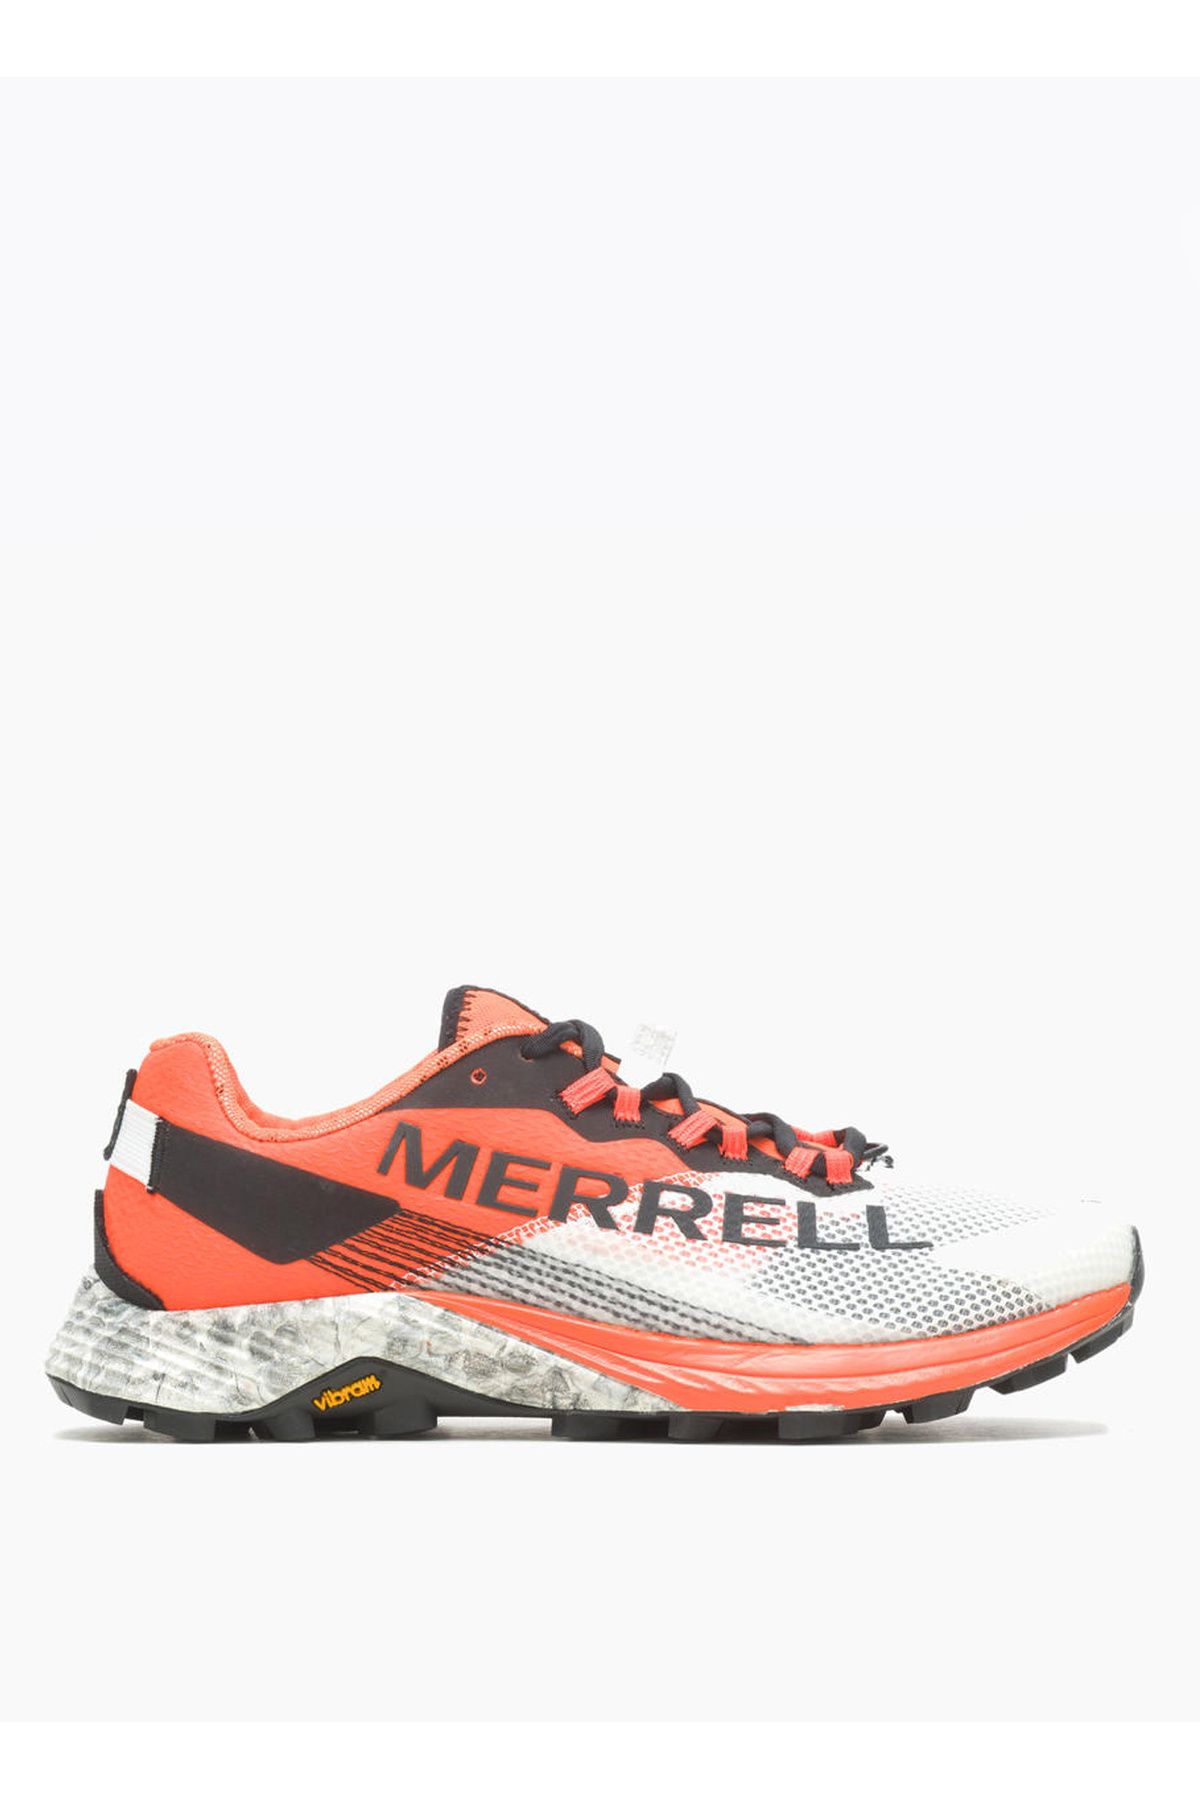 Merrell Beyaz Kadın Koşu Ayakkabısı J067690Mtl Long Sky 2